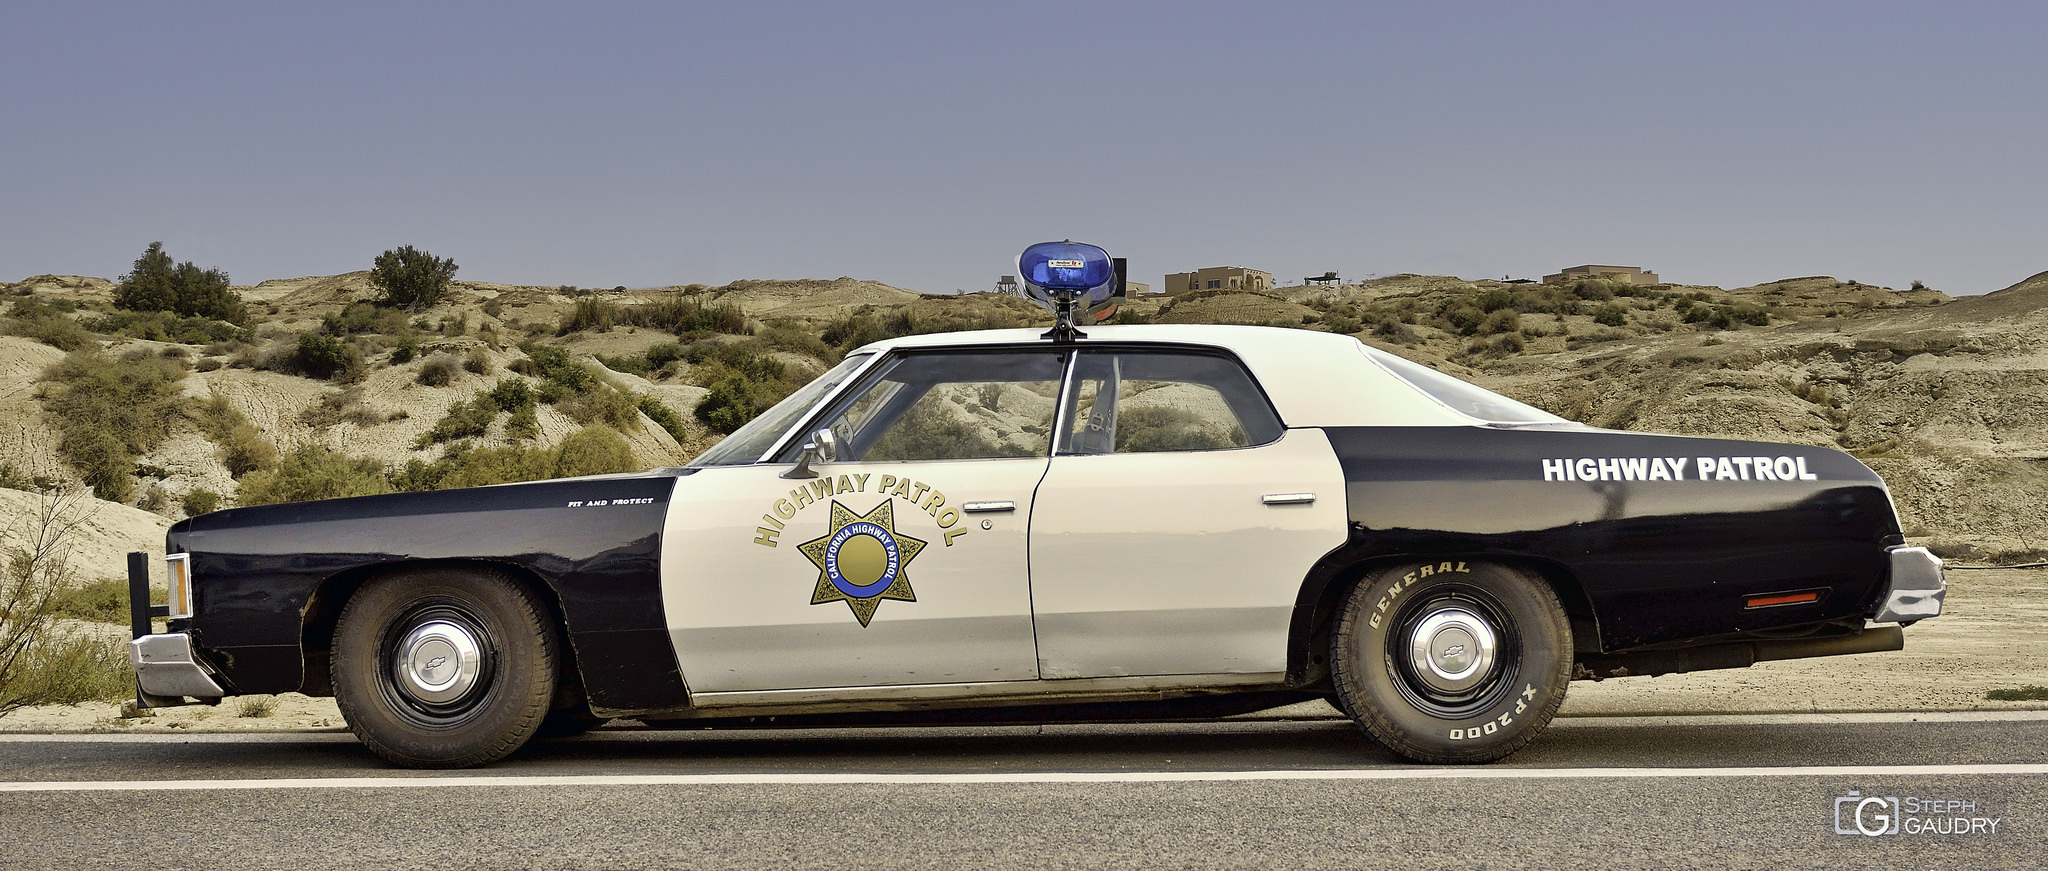 California highway patrol - pit and protect [Klicken Sie hier, um die Diashow zu starten]